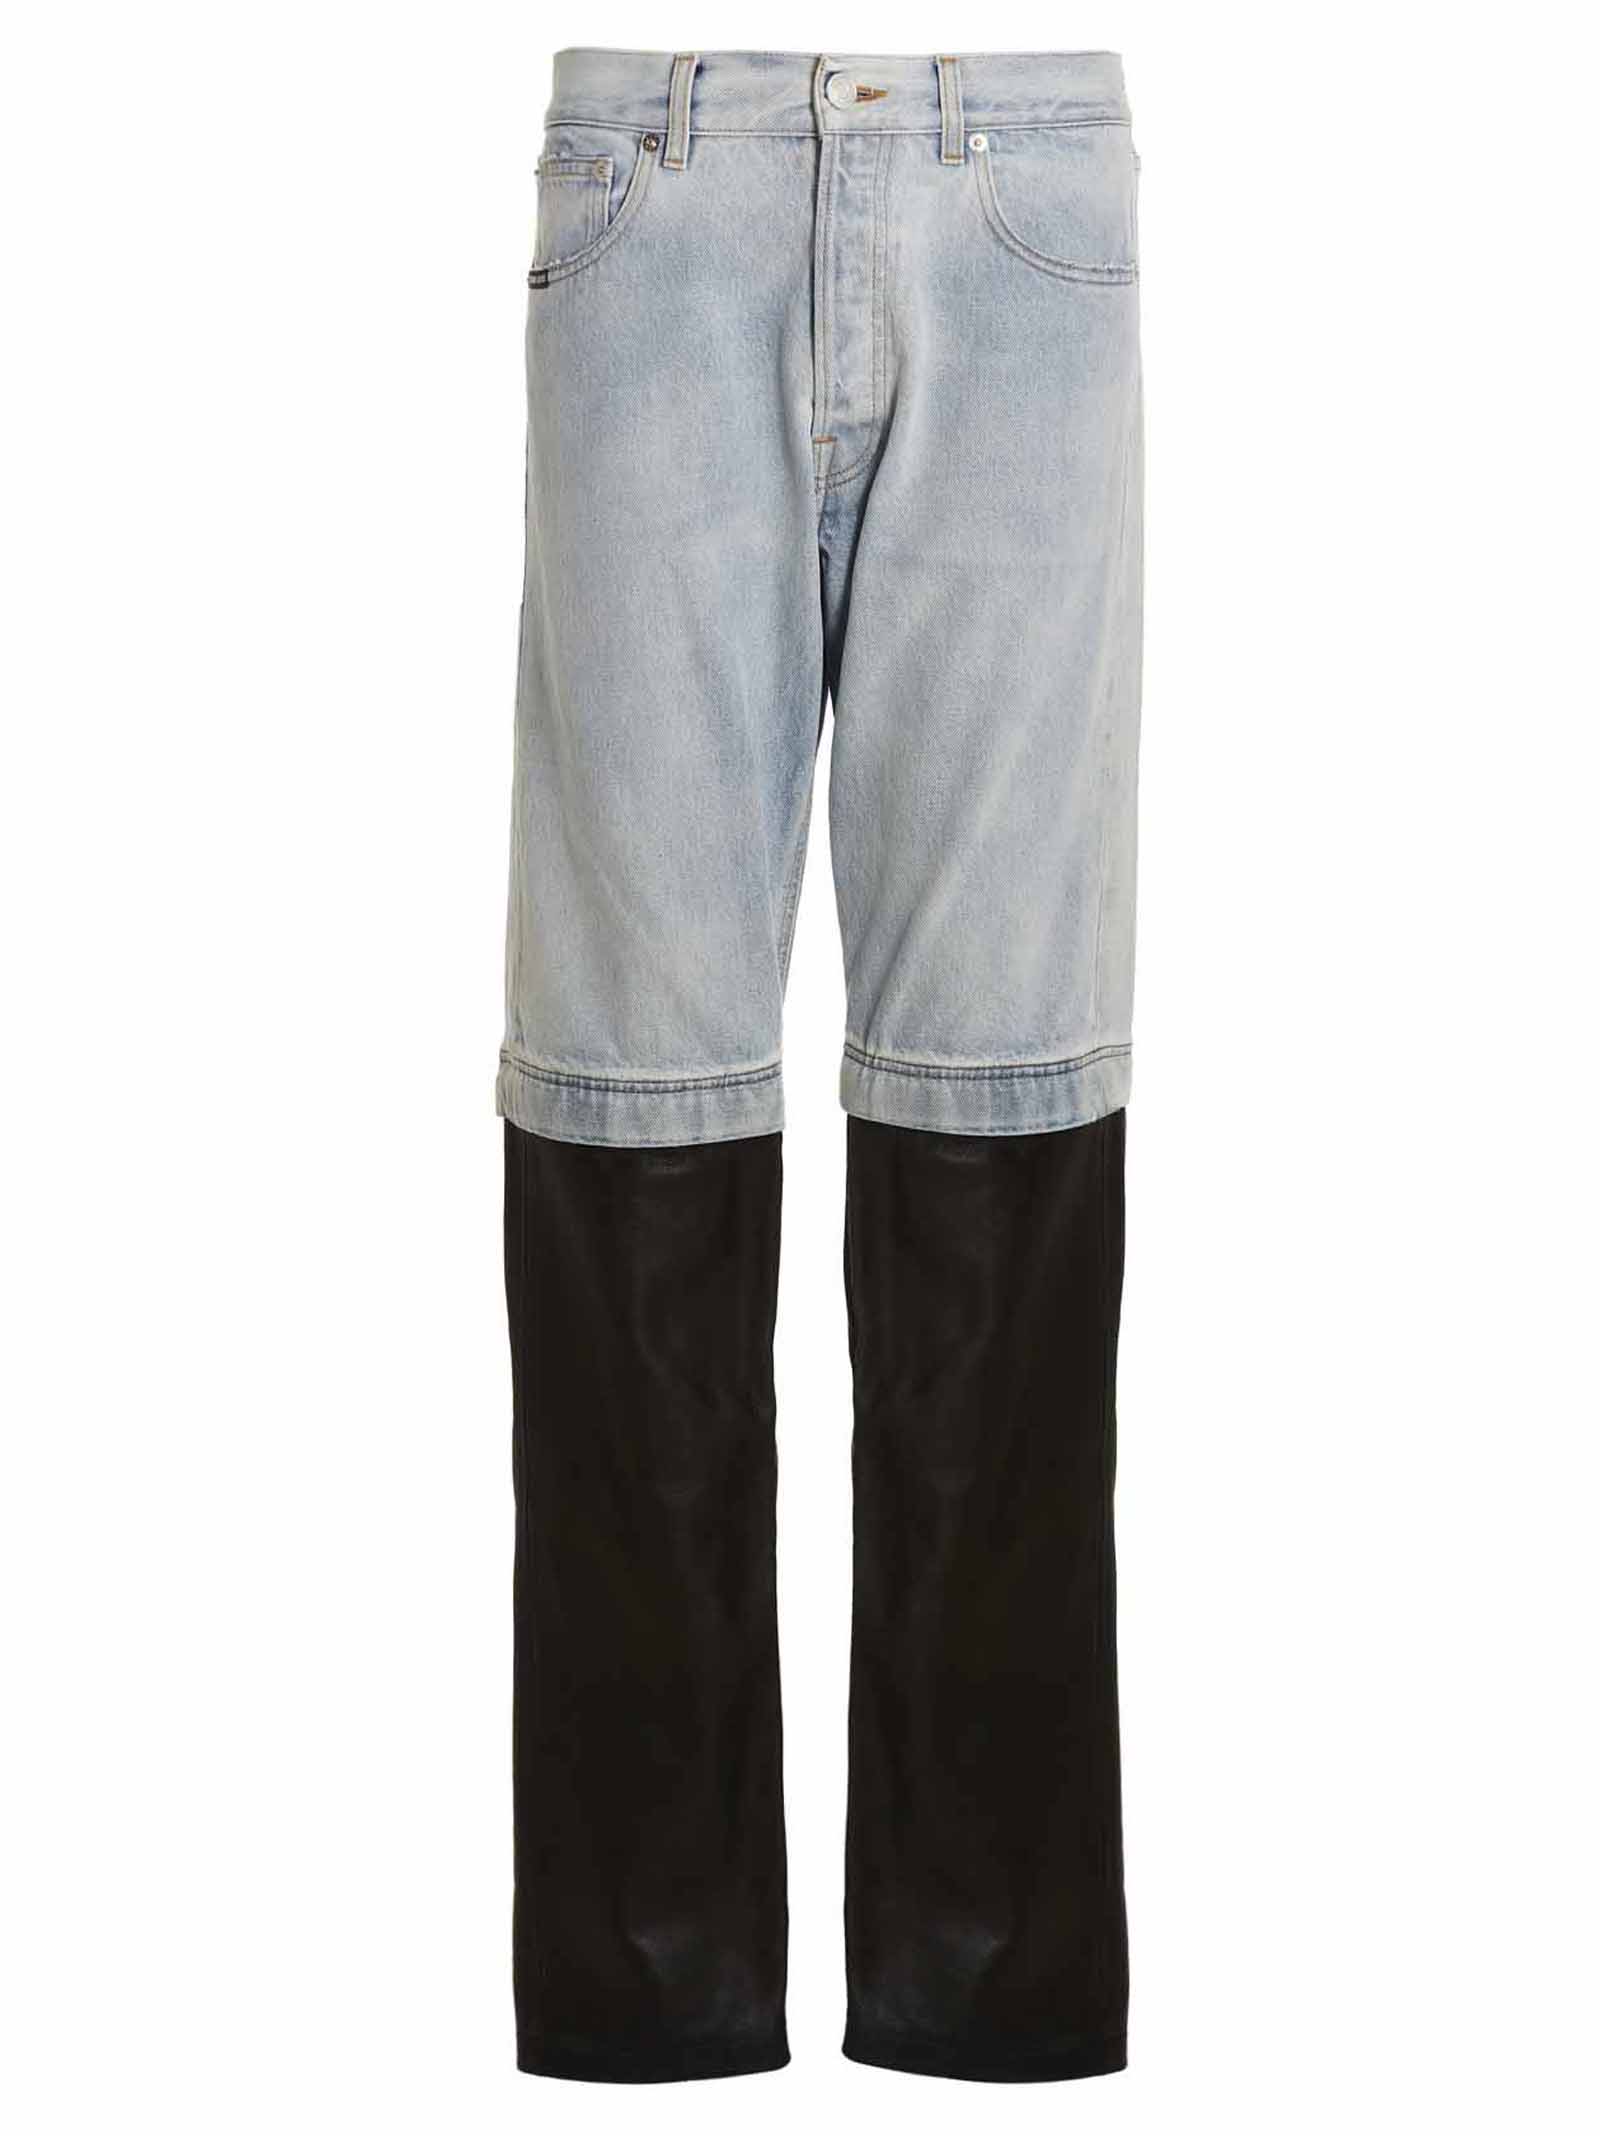 VTMNTS leather/denim Jeans Pants